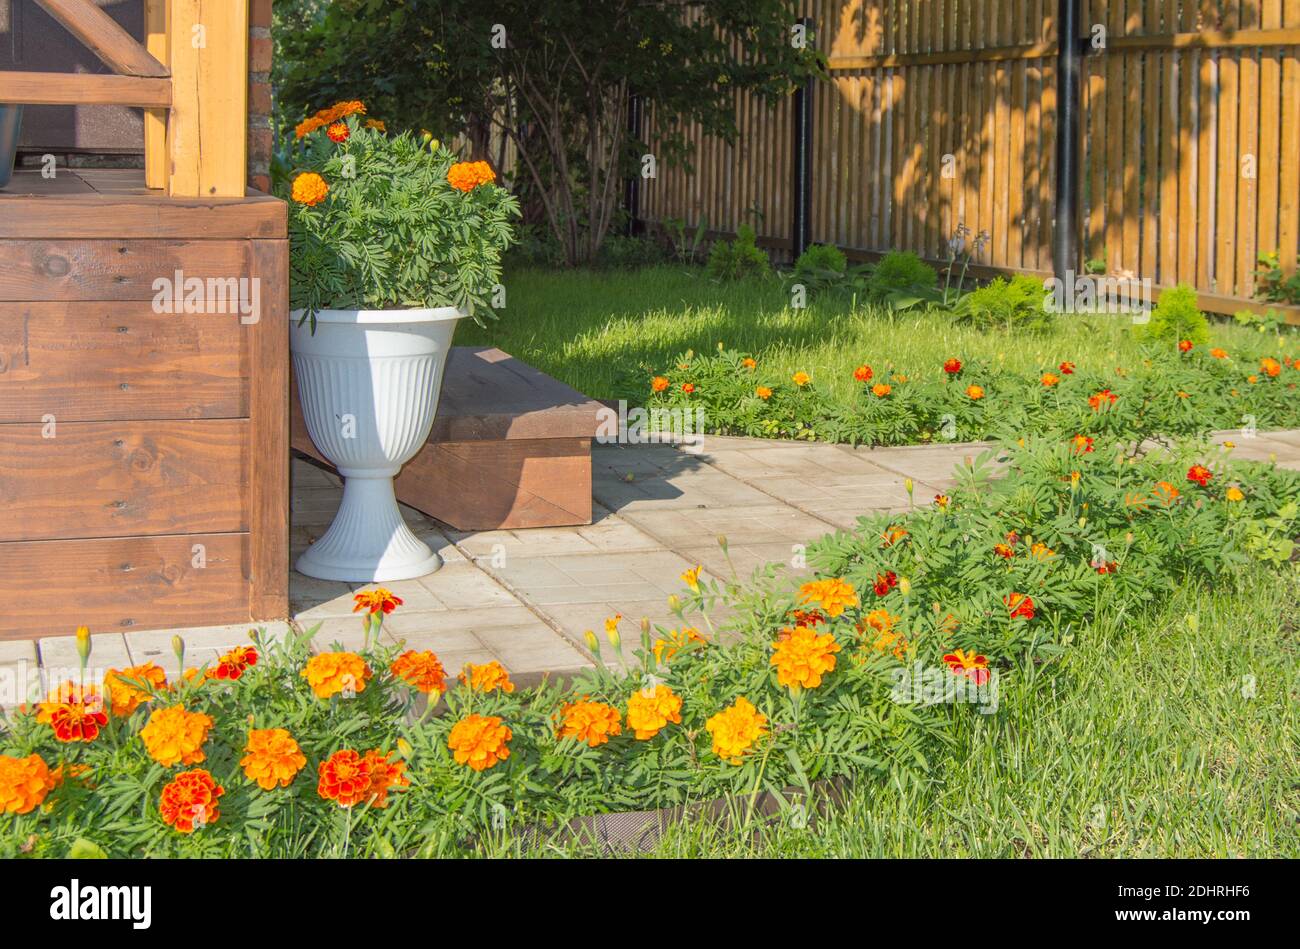 Belle conception de l'arrière-cour avec une véranda, vase au sol, nouvelle clôture en bois, pelouse et marigolds fleuris, soleil jour d'été. Banque D'Images